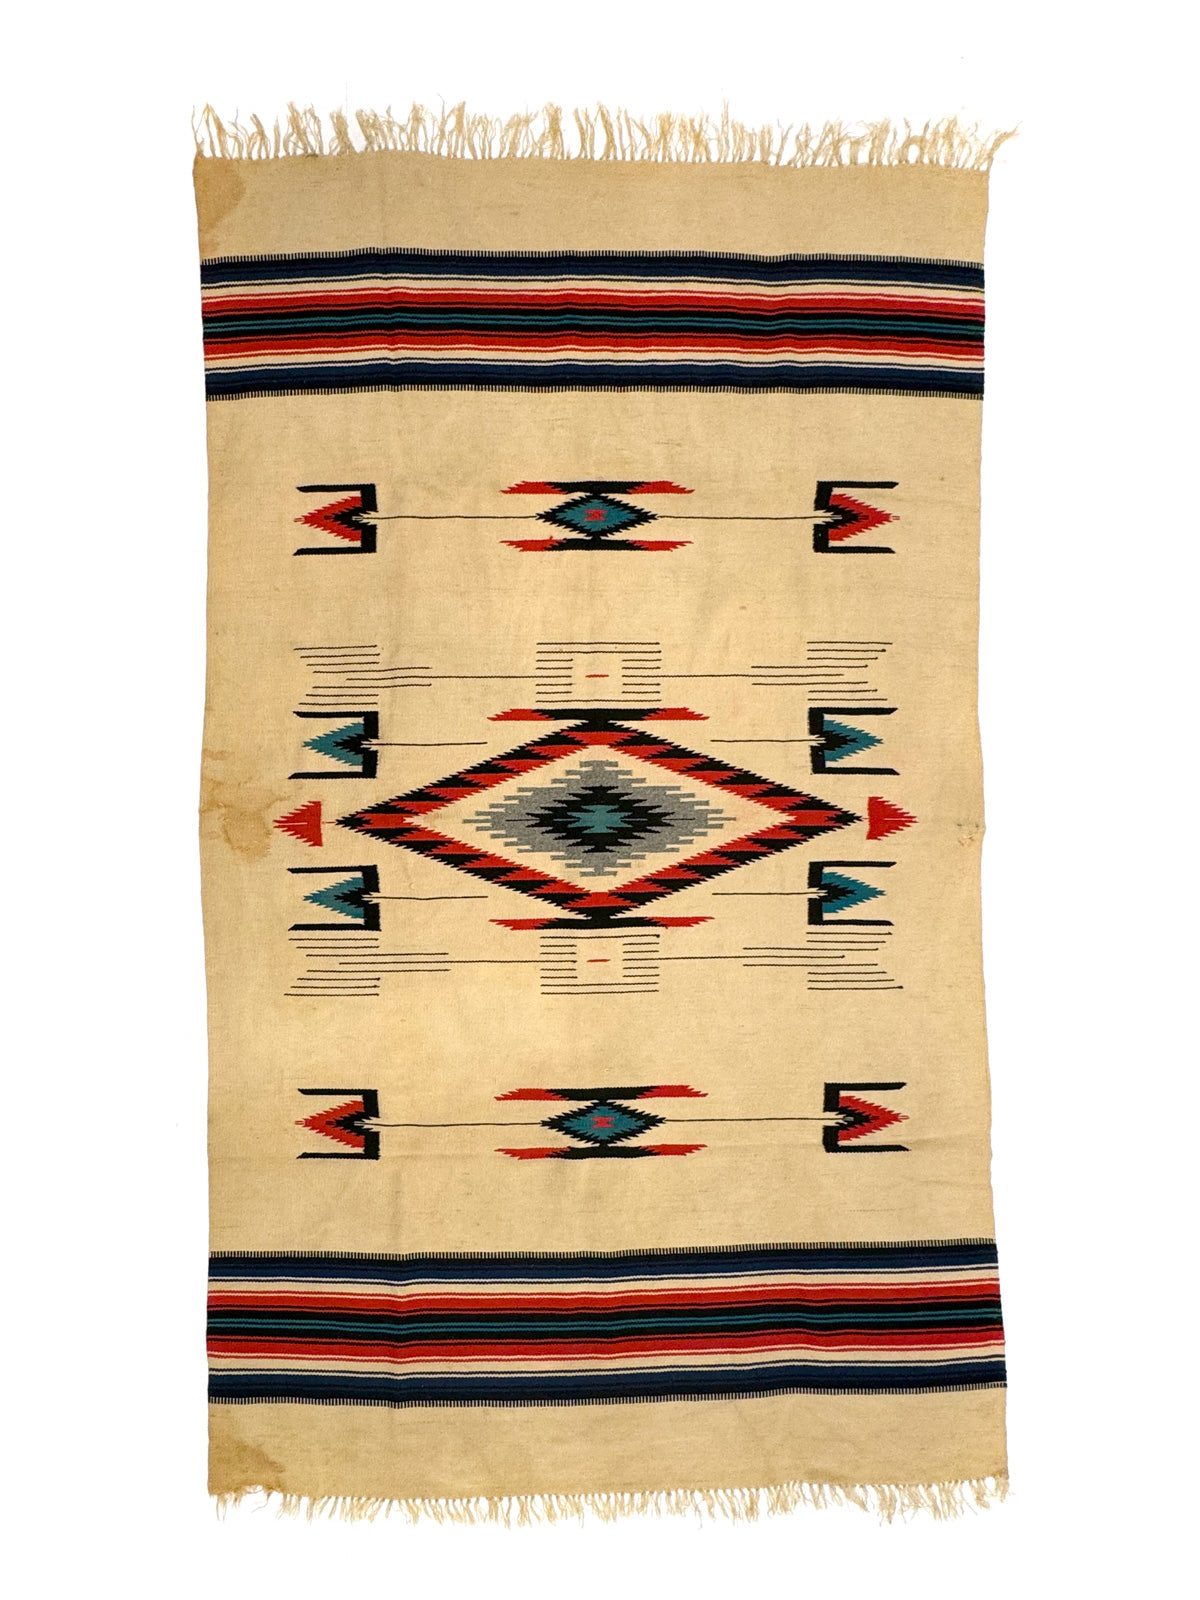 Chimayo Blanket c. 1940s, 80" x 51"